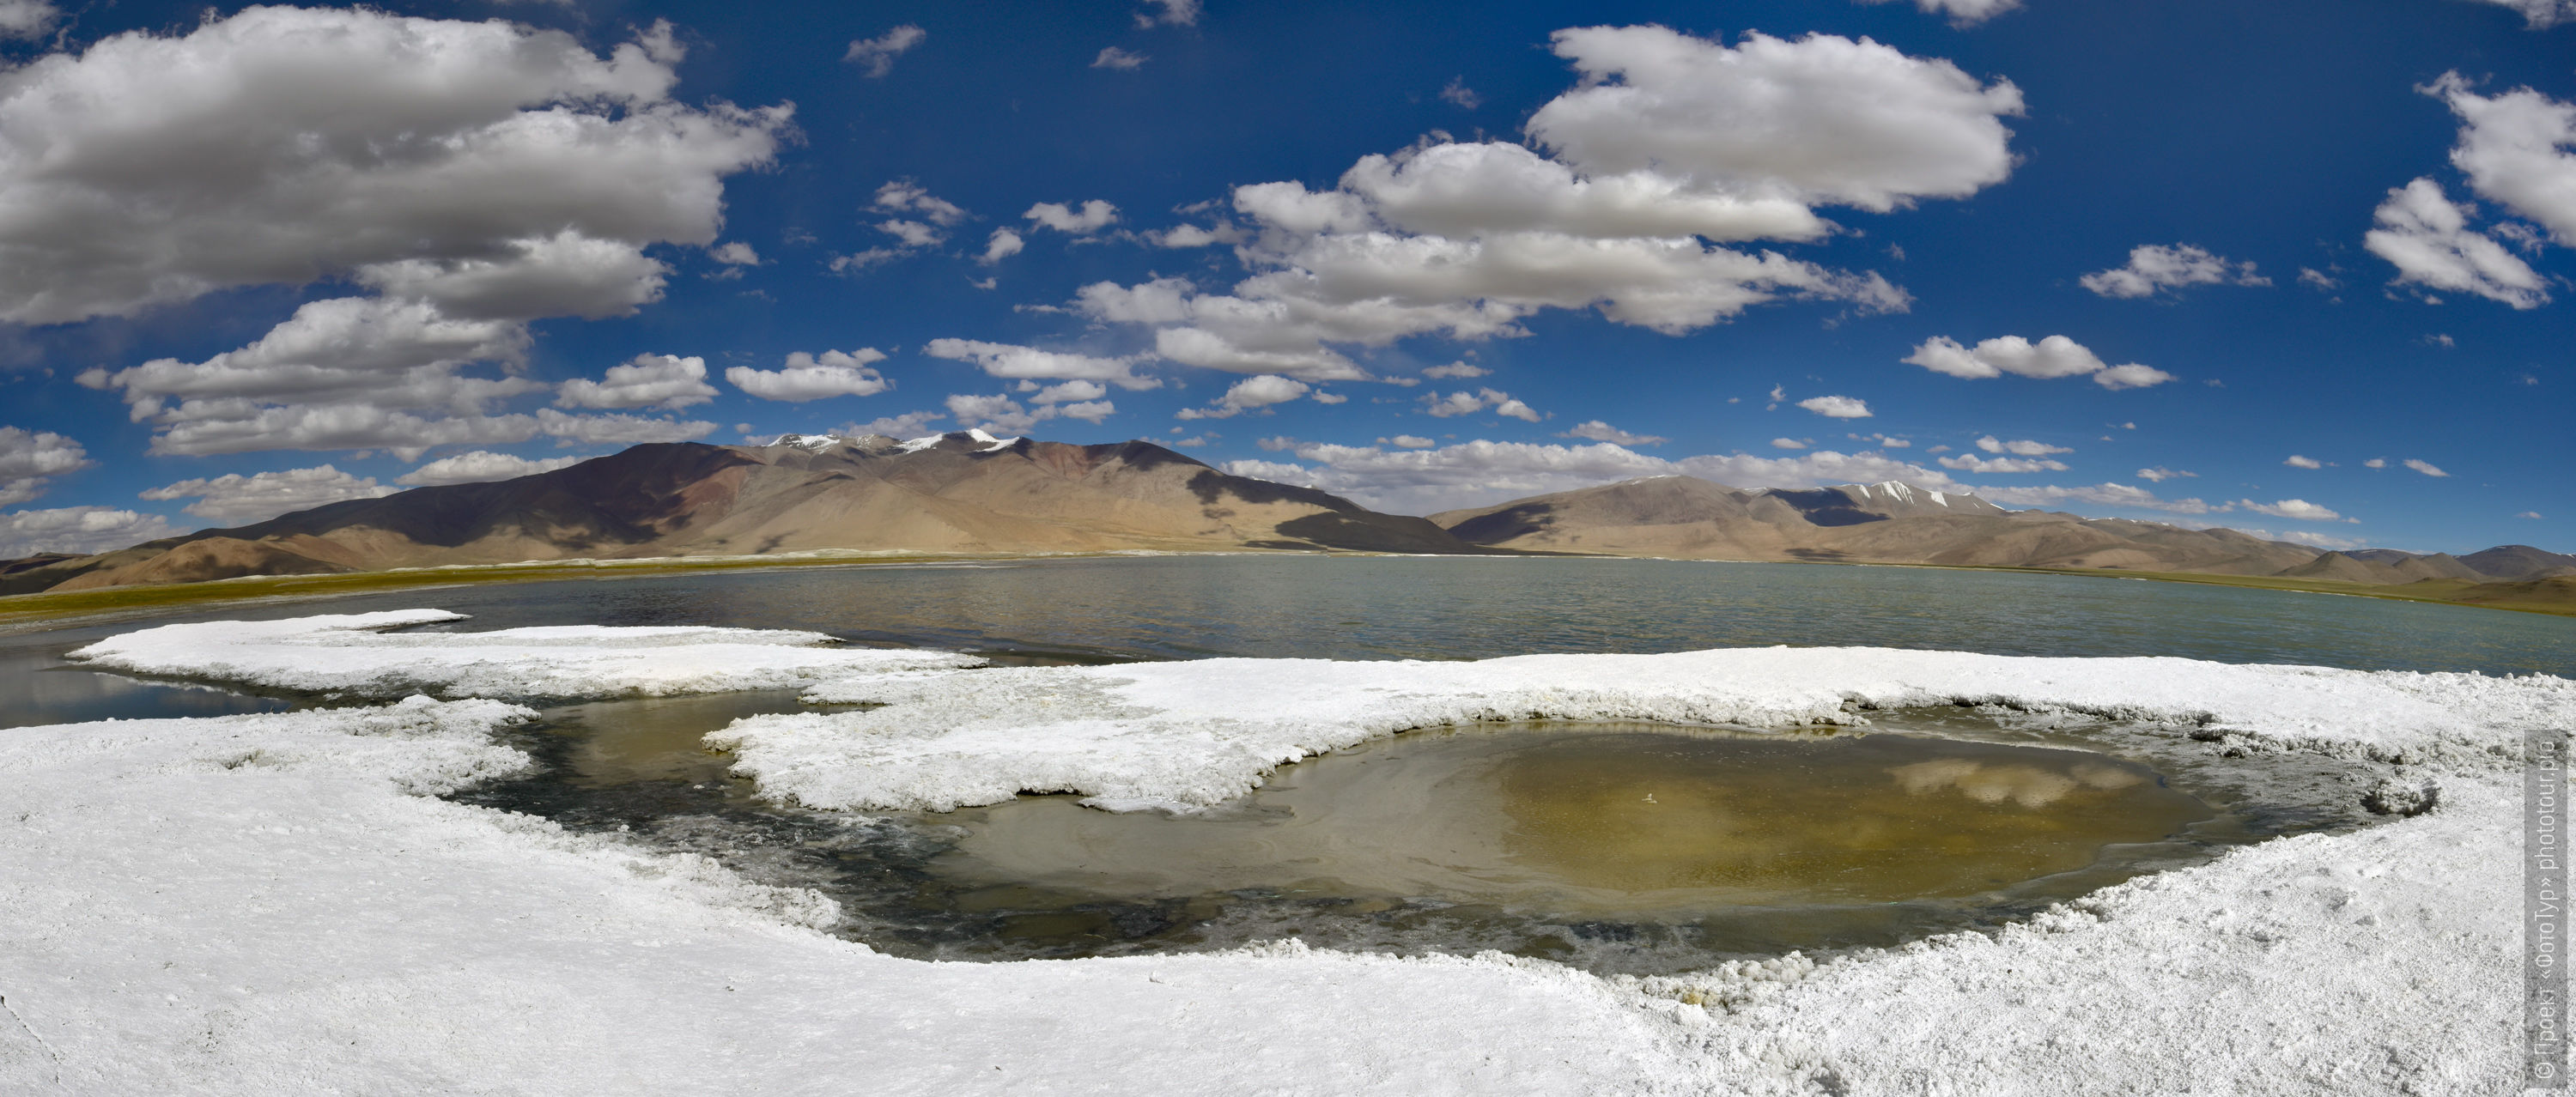 Salt shores of Lake Tso Kar, Ladakh women’s tour, August 31 - September 14, 2019.